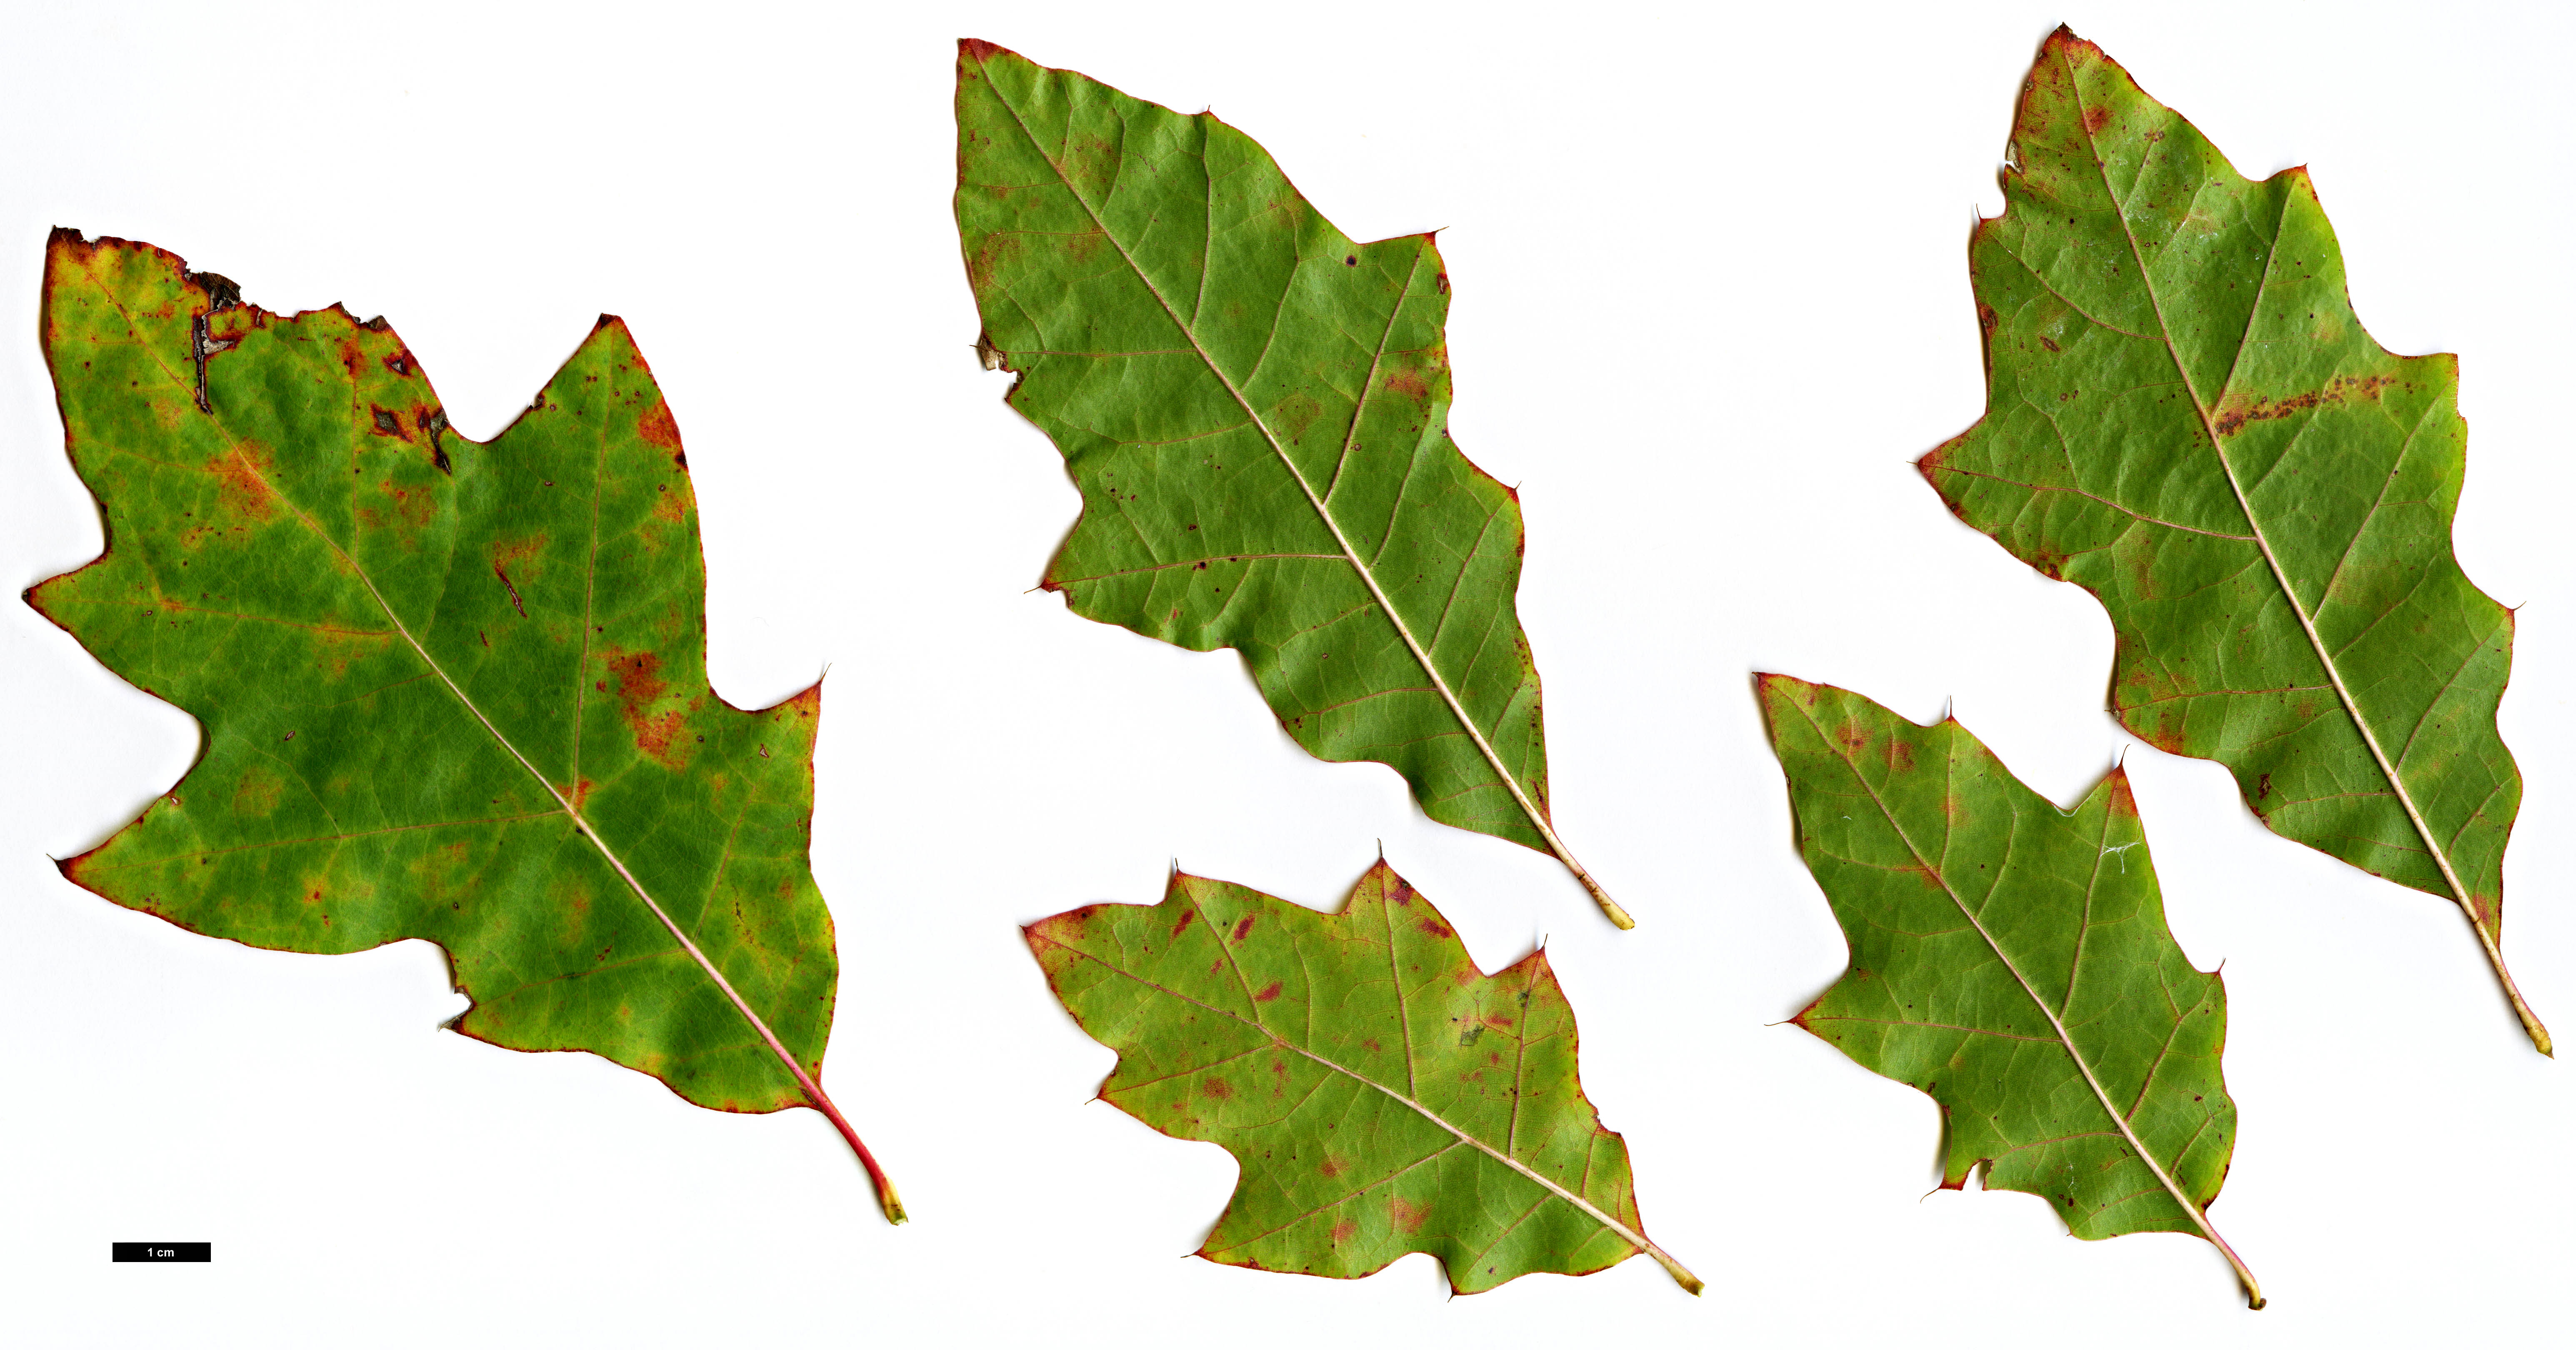 High resolution image: Family: Fagaceae - Genus: Quercus - Taxon: ×exacta (Q.phellos × Q.velutina)